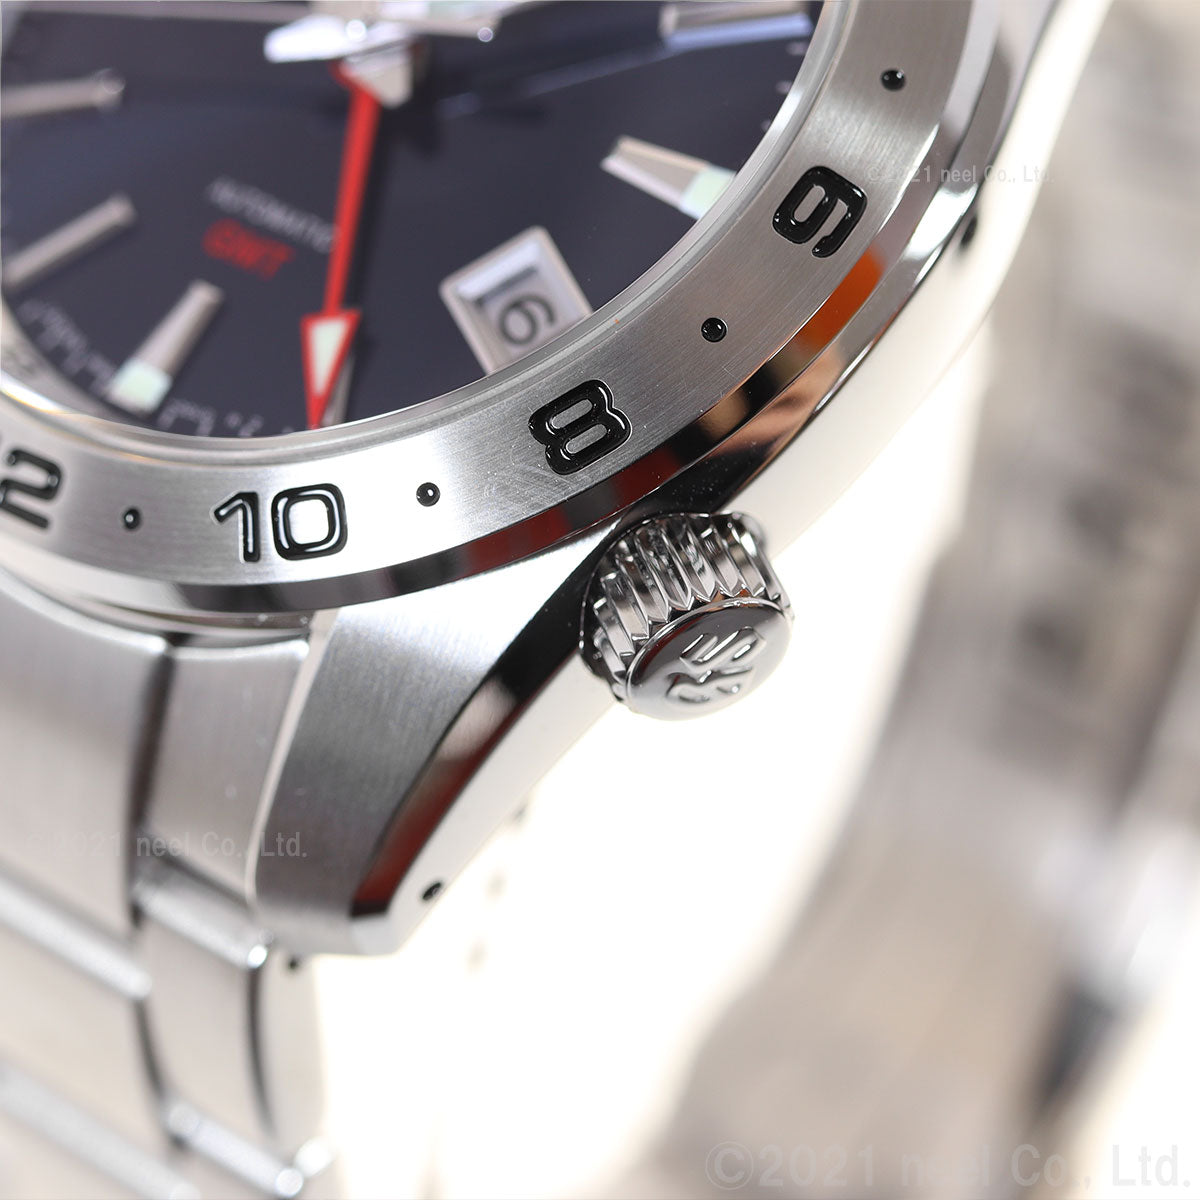 グランドセイコー メカニカル メンズ GMT 腕時計 自動巻き GRAND SEIKO 時計 SBGM245